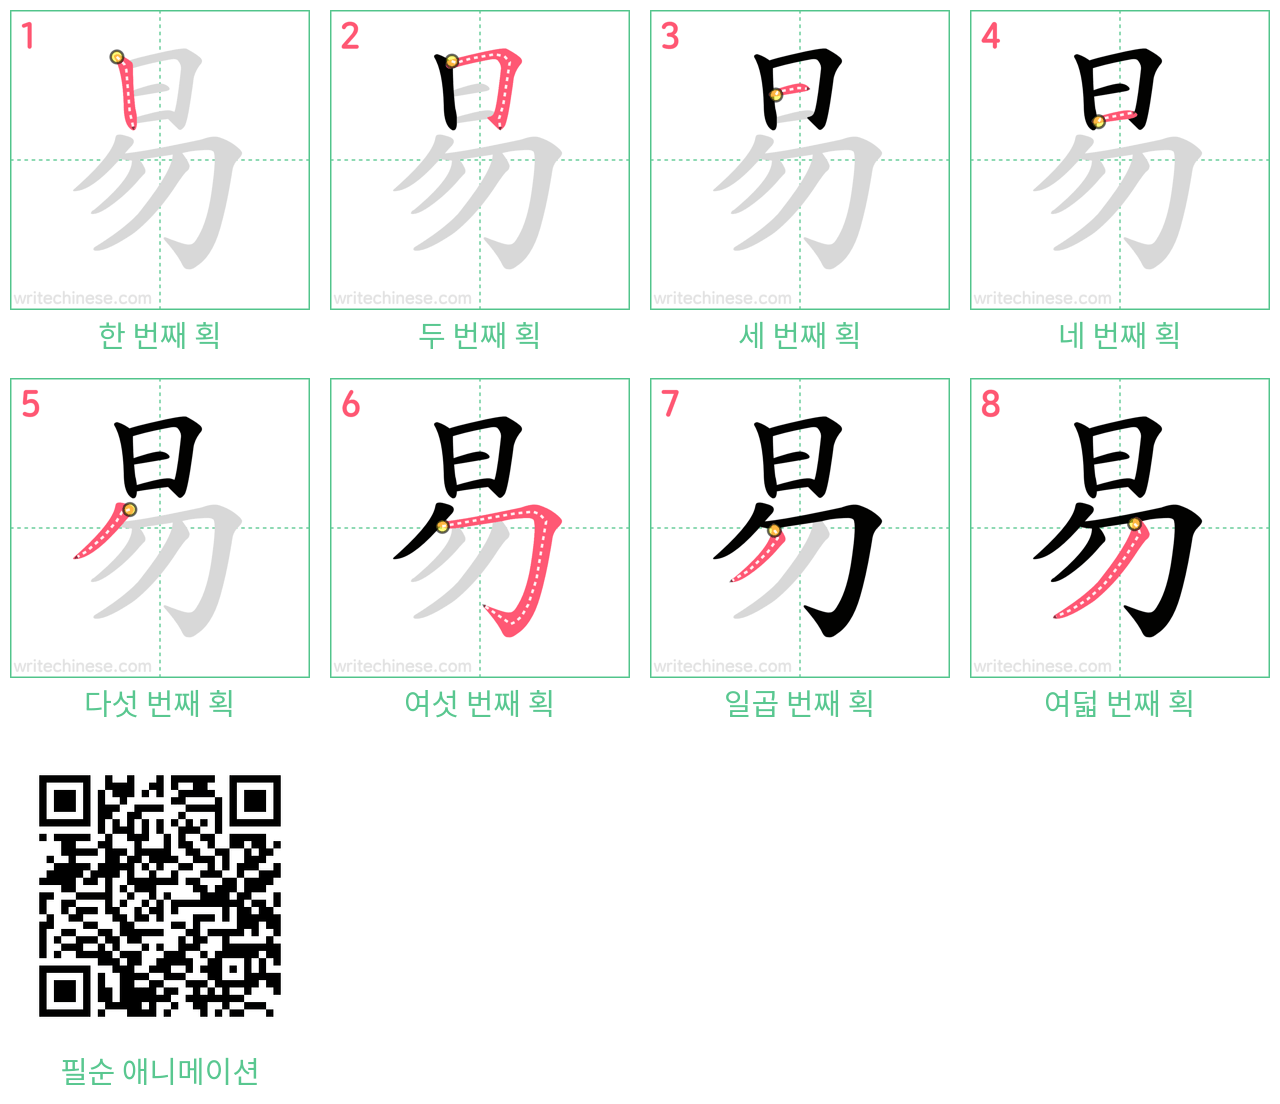 易 step-by-step stroke order diagrams